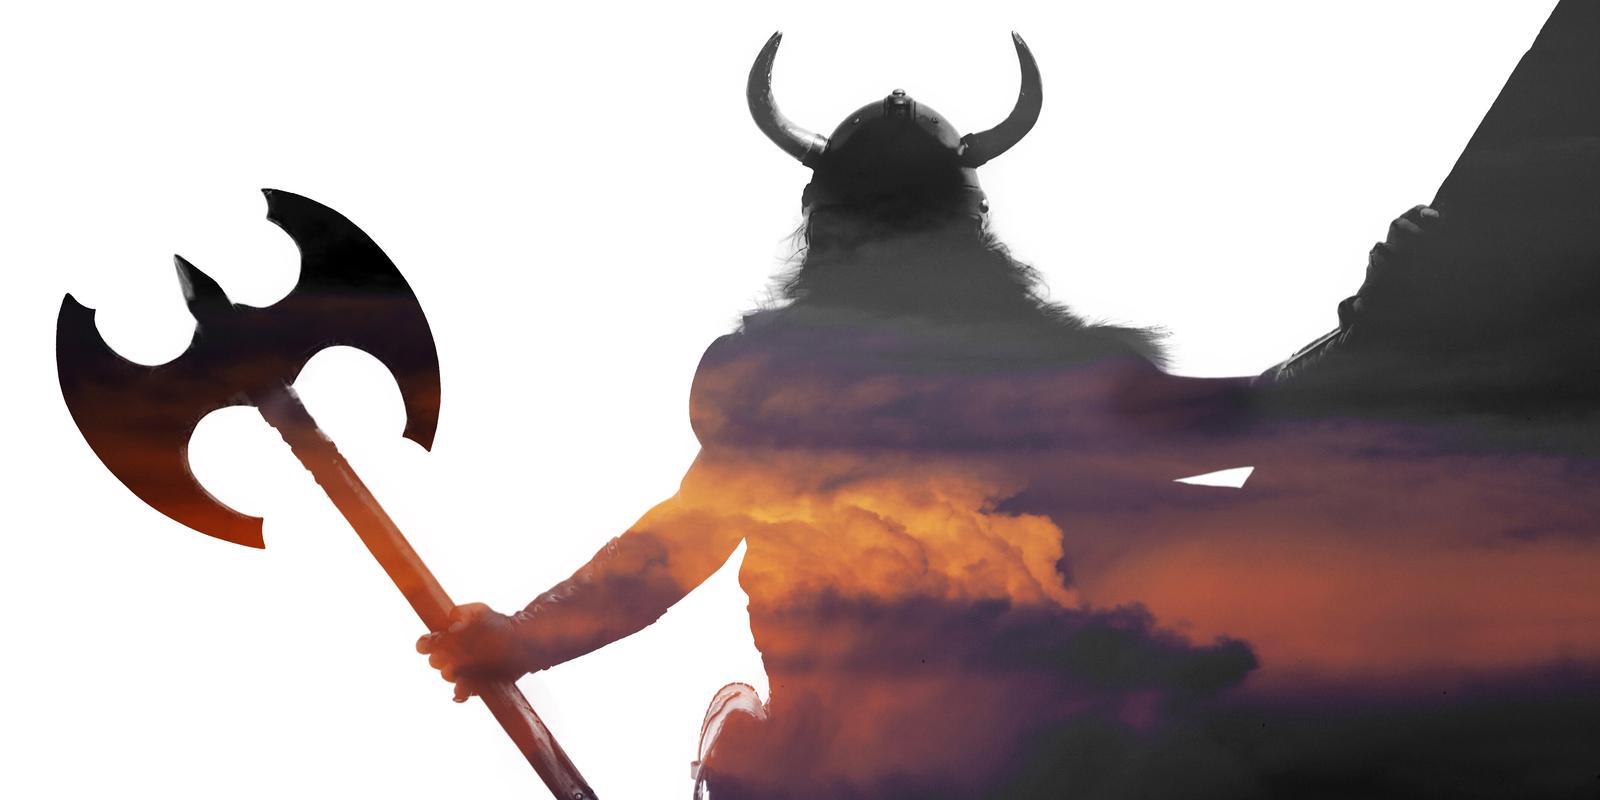 A Viking silhouette.